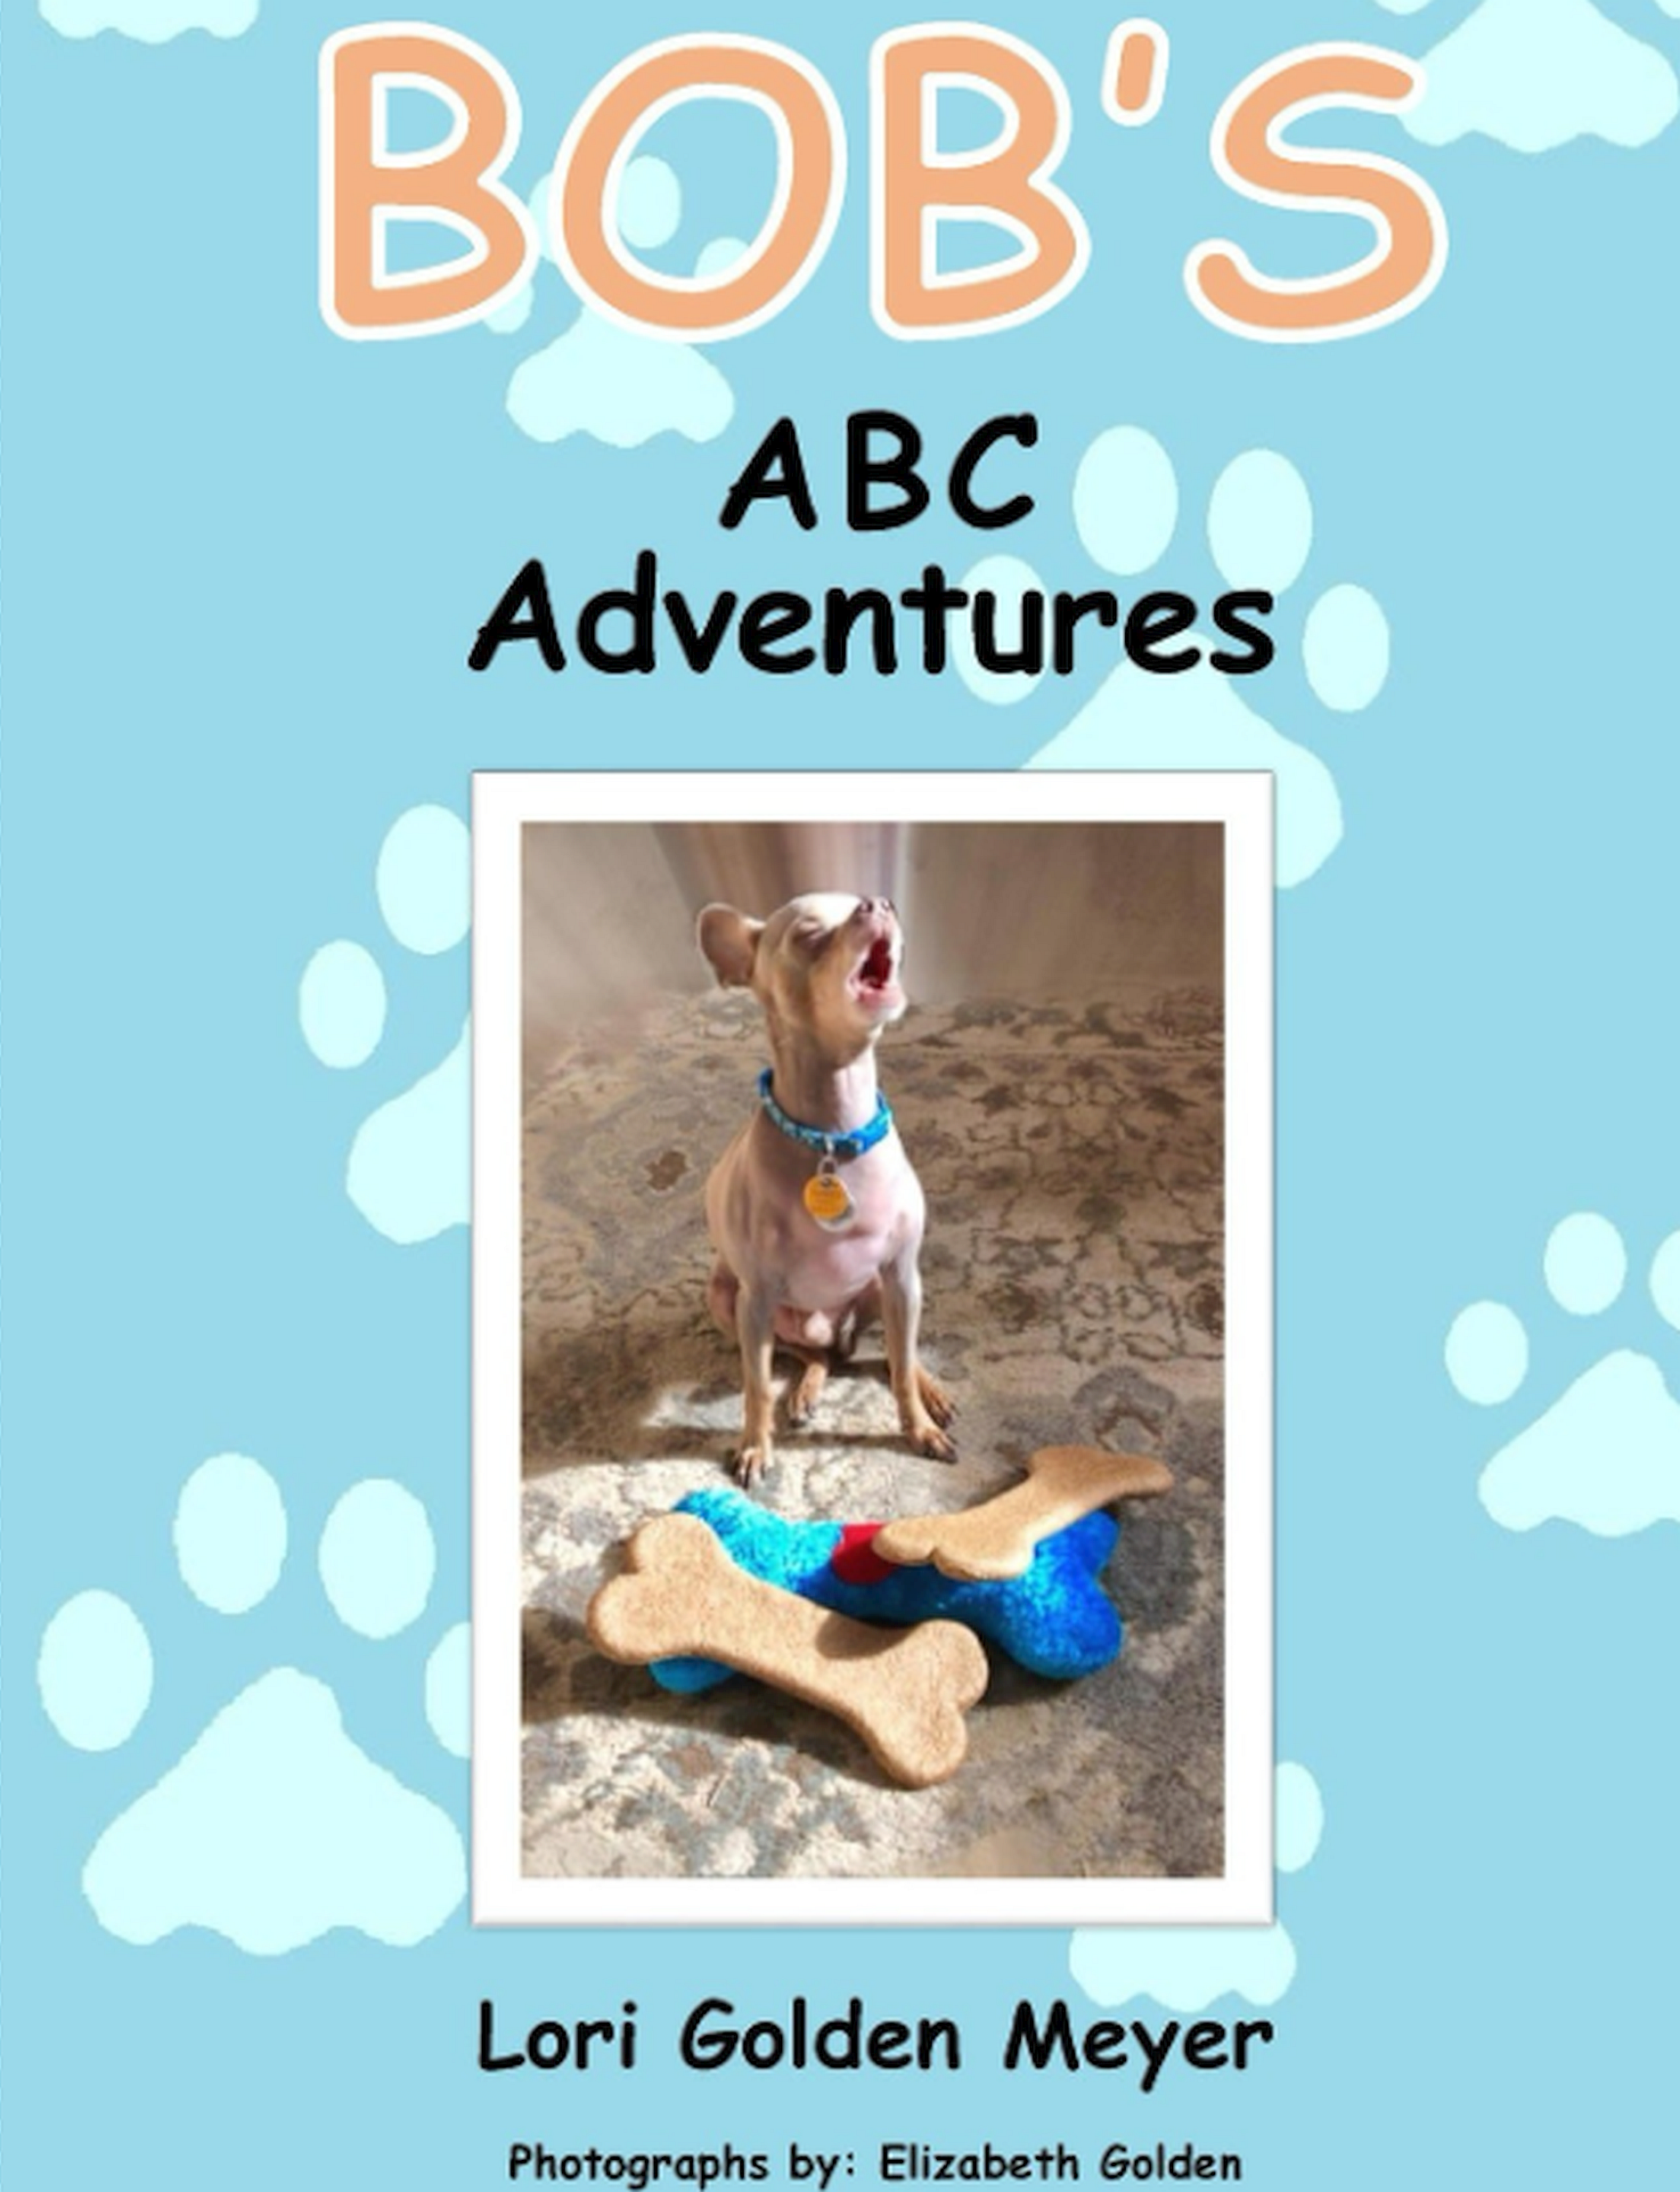 Bob's ABC Adventures